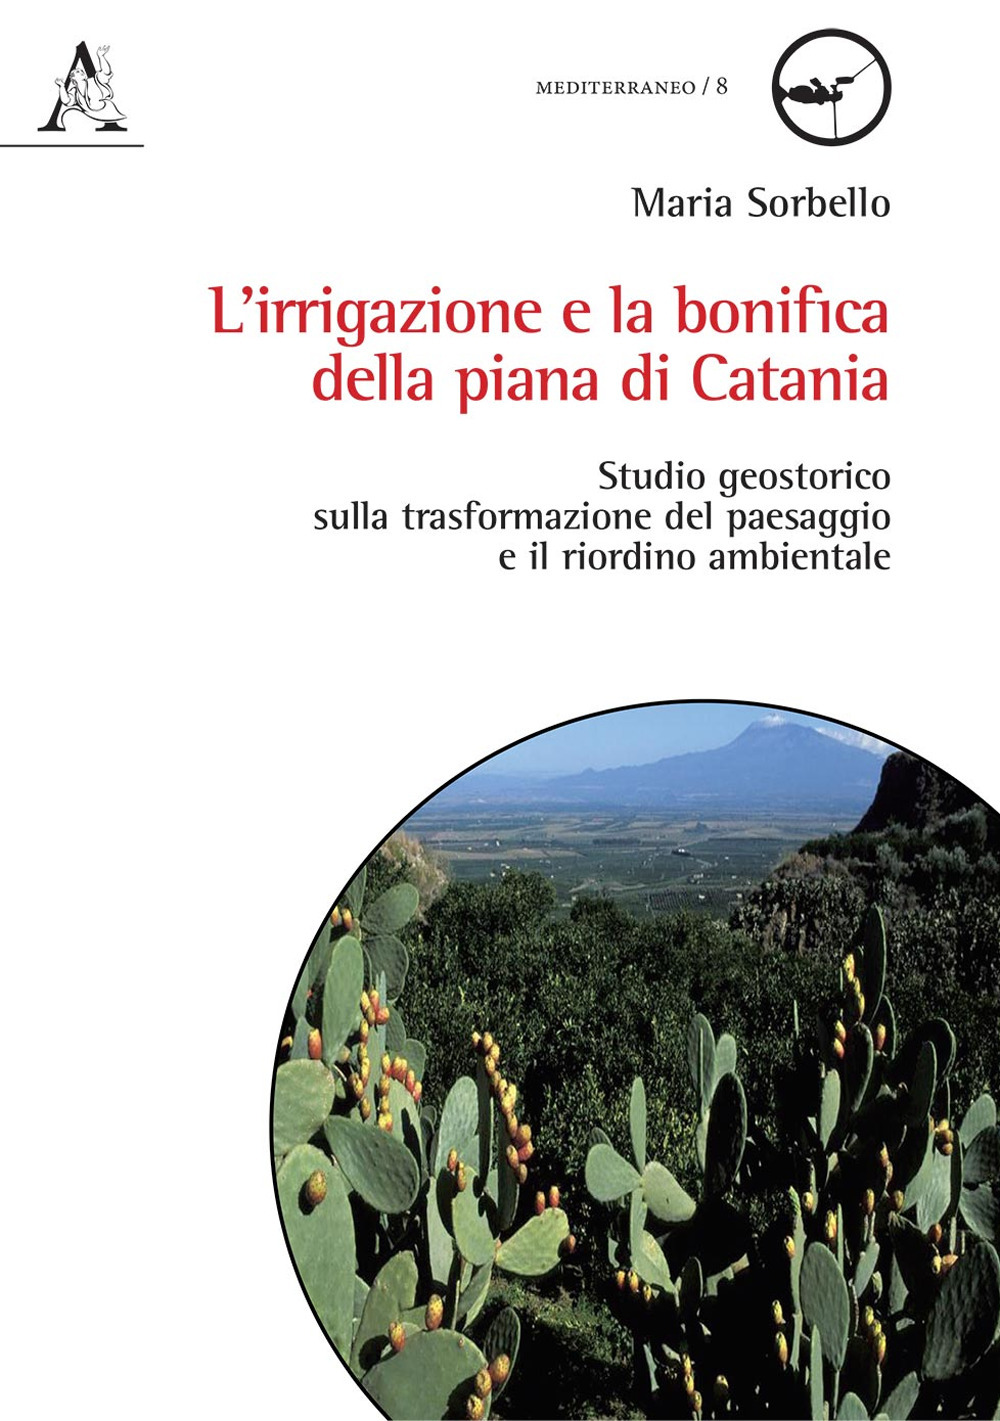 L'irrigazione e la bonifica della piana di Catania. Studio geostorico sulla trasformazione del paesaggio e il riordino ambientale